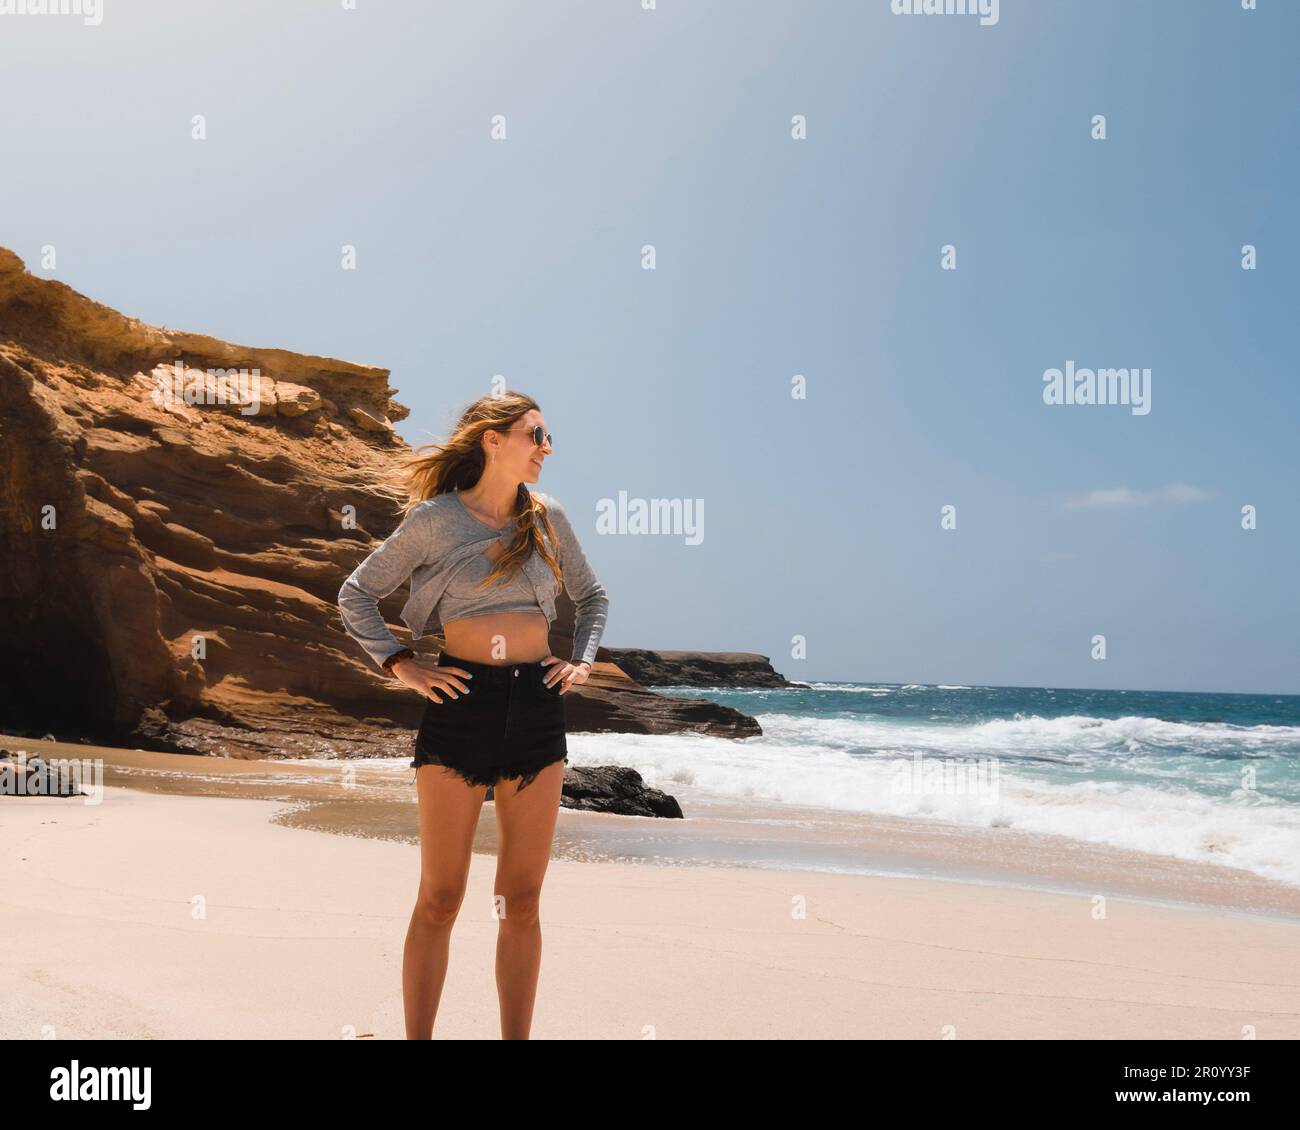 Die junge weiße Frau lächelt und schaut während ihres Sommerurlaubs am Playa de los Ojos auf der Kanarischen Insel Fuerteventura auf das Meer. Stockfoto